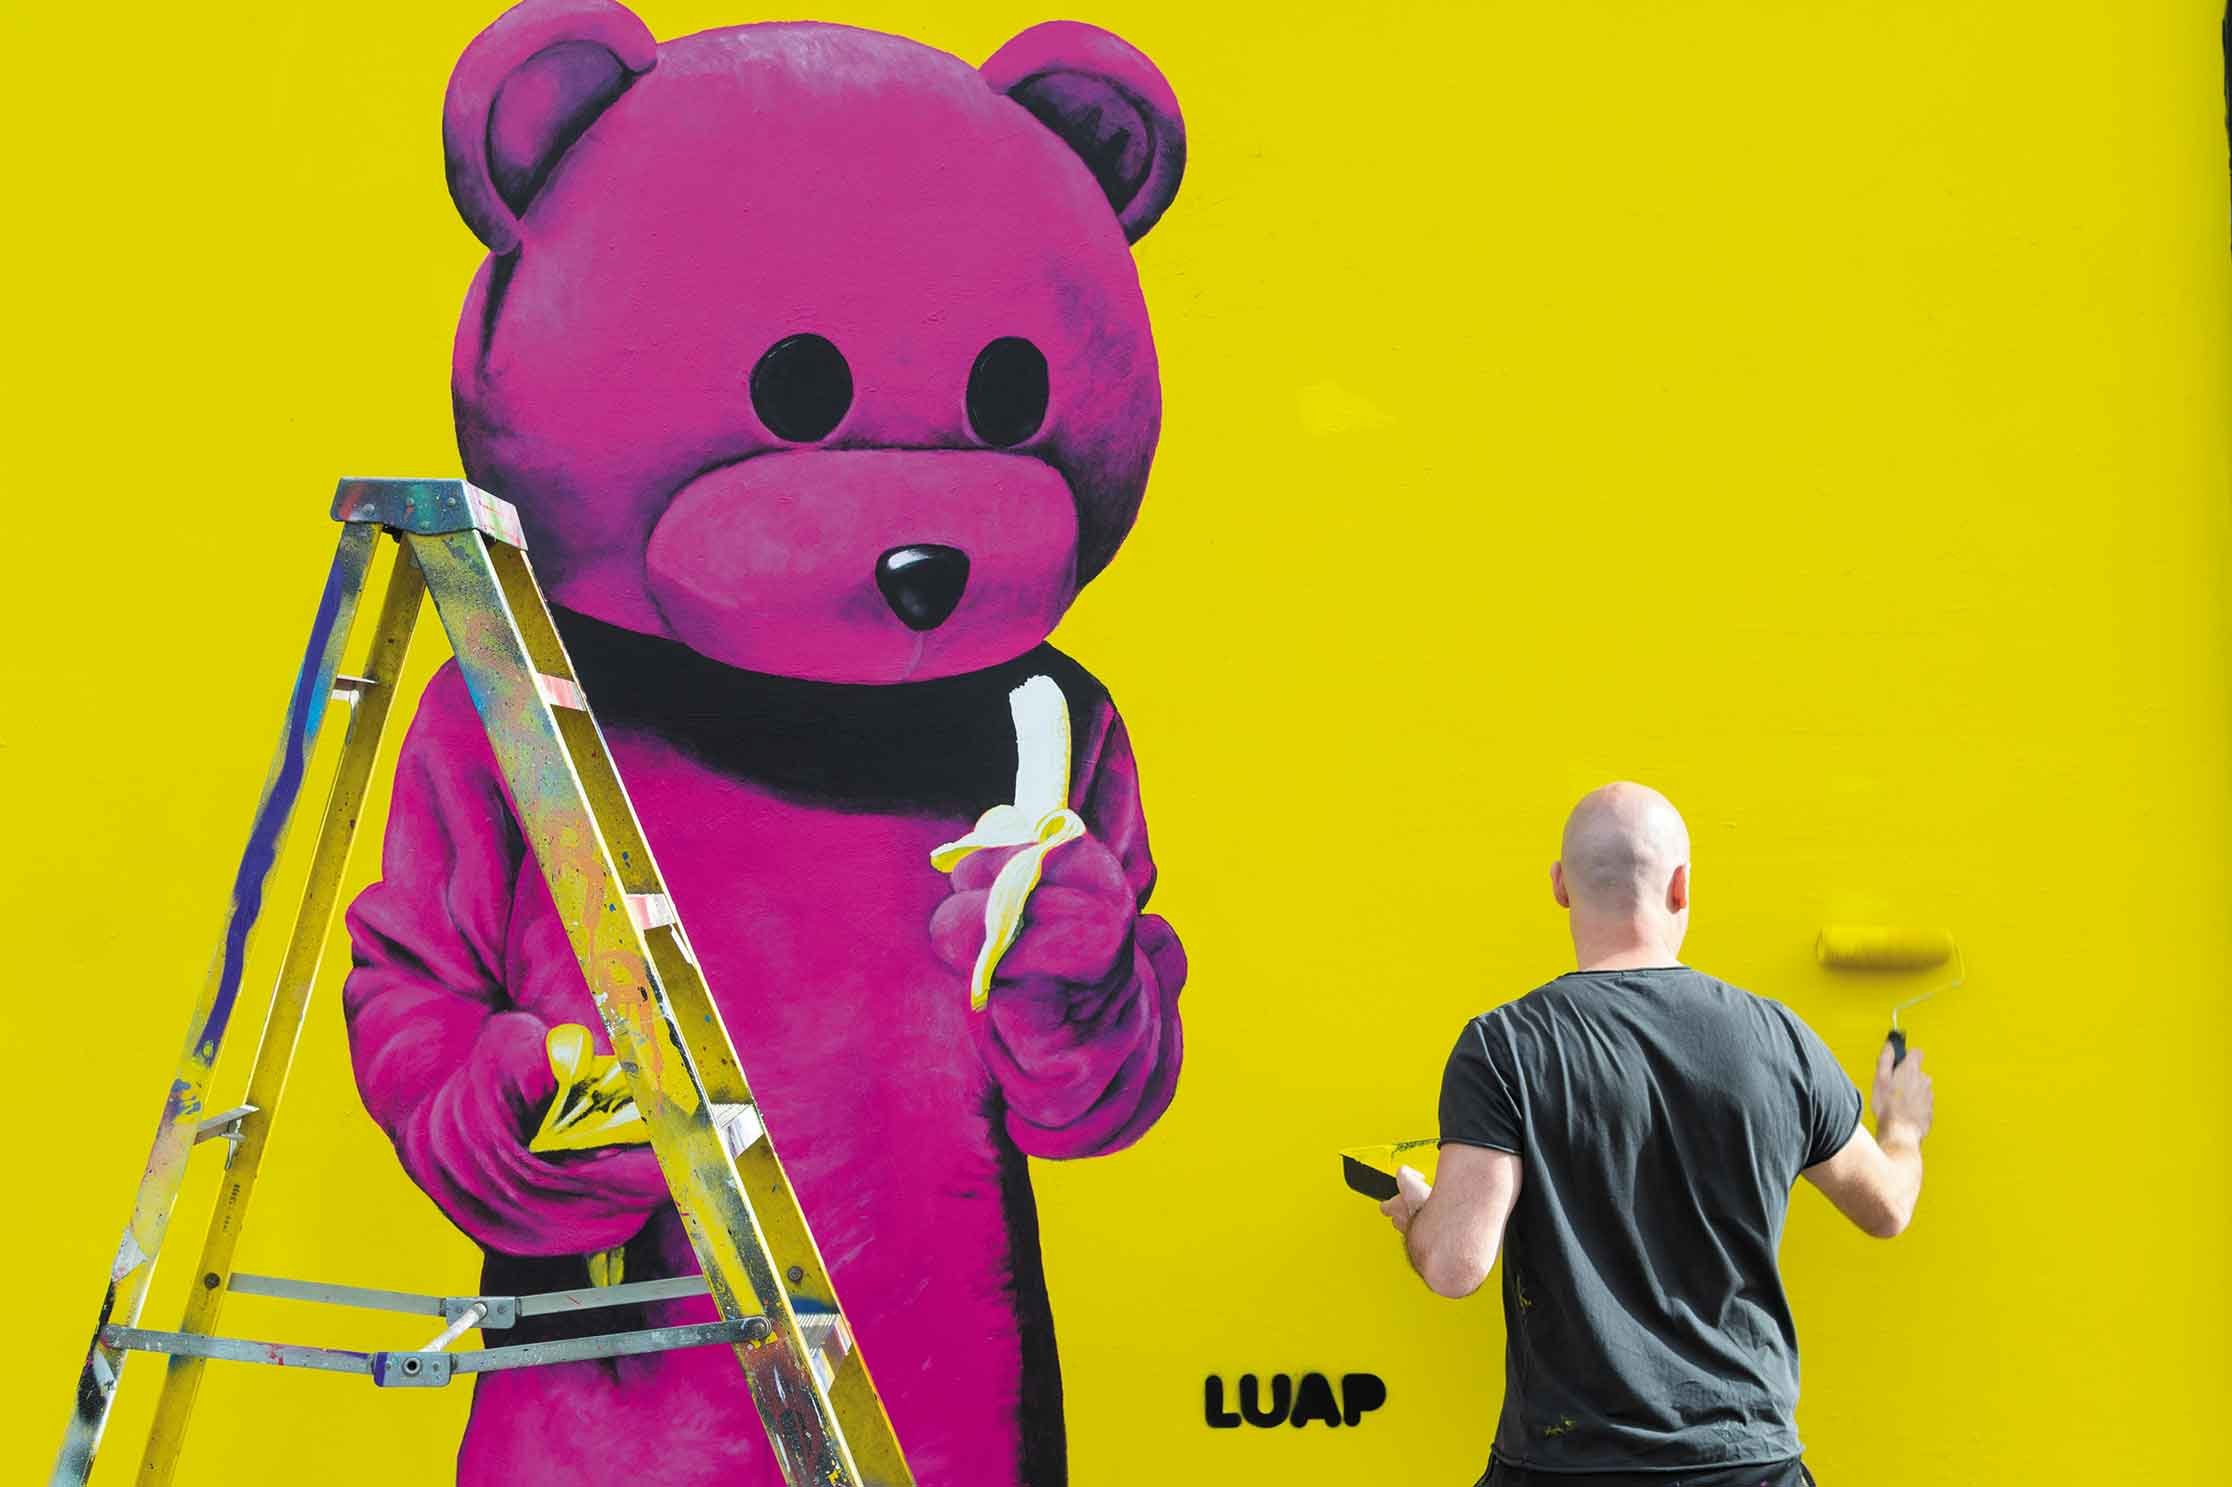 LUAP-interview-the-pink-bear-artist-cene4.jpg